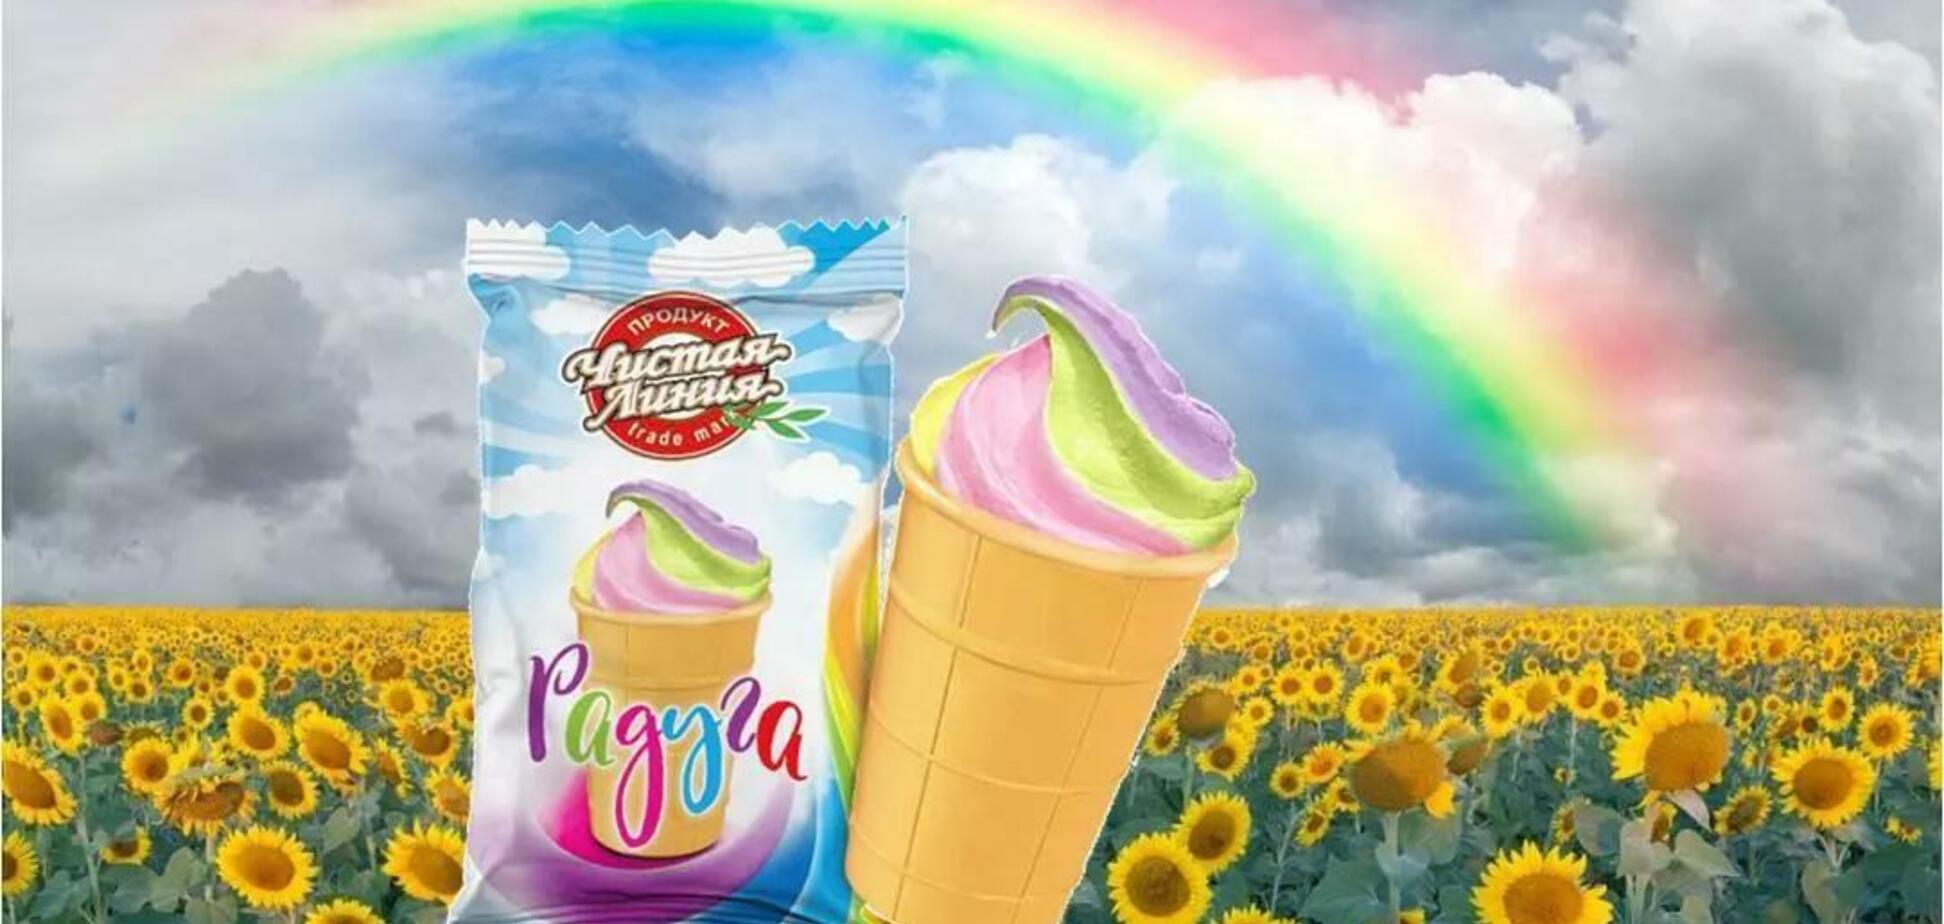 Производитель мороженого 'Радуга' отверг обвинения в пропаганде ЛГБТ